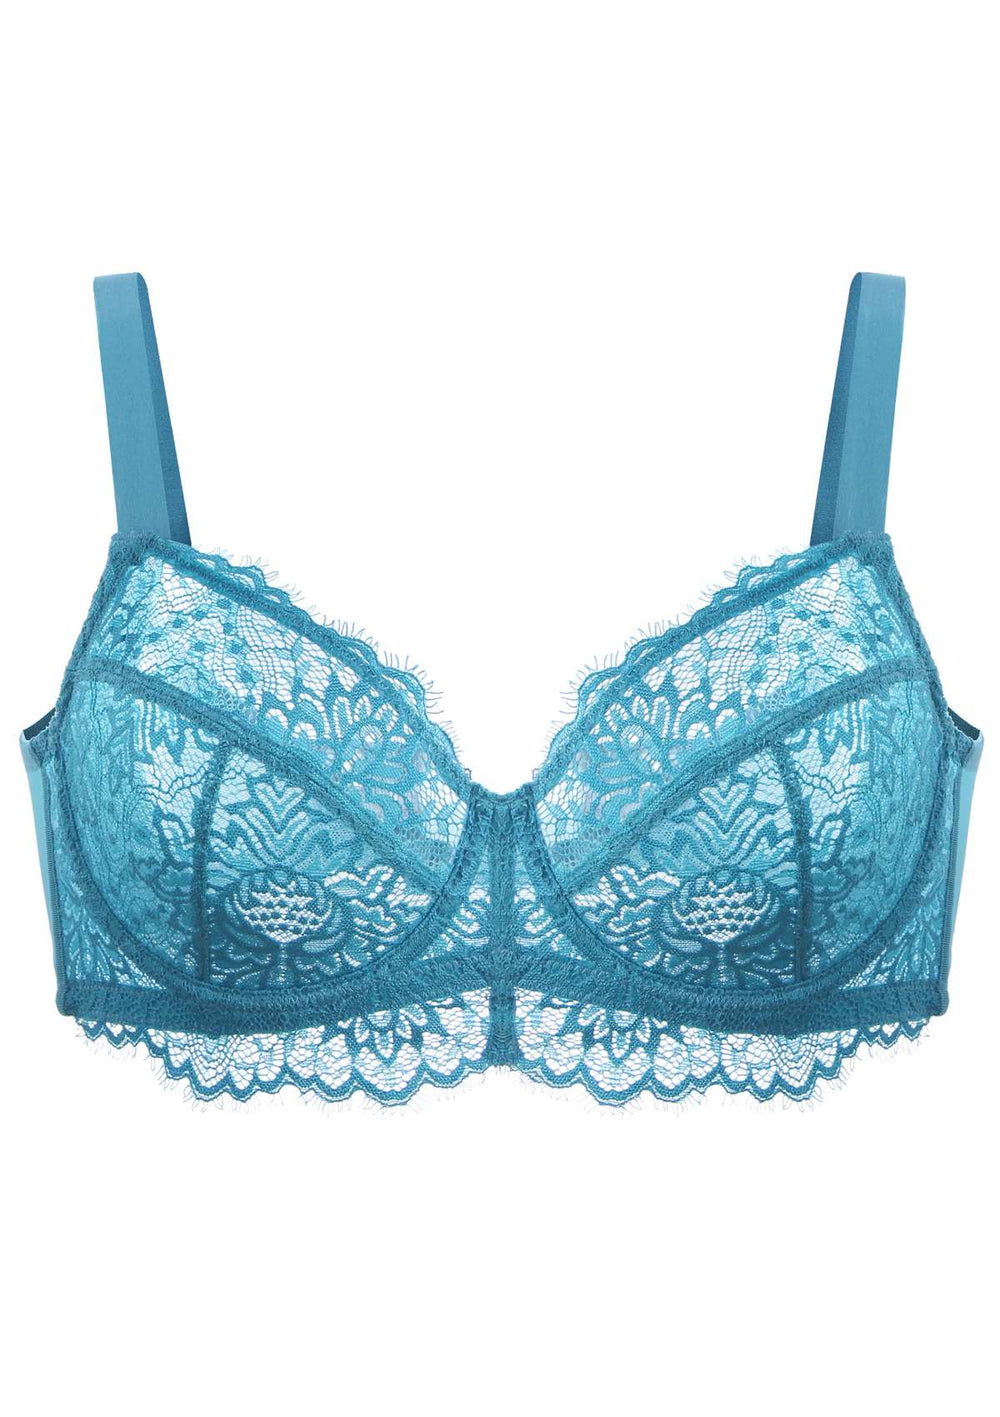 Aqua Lace Bralette/lingerie/lingerie Set/bralette/lace Bralette/ Blue  Bralette/ Turquoise Bralette -  Canada